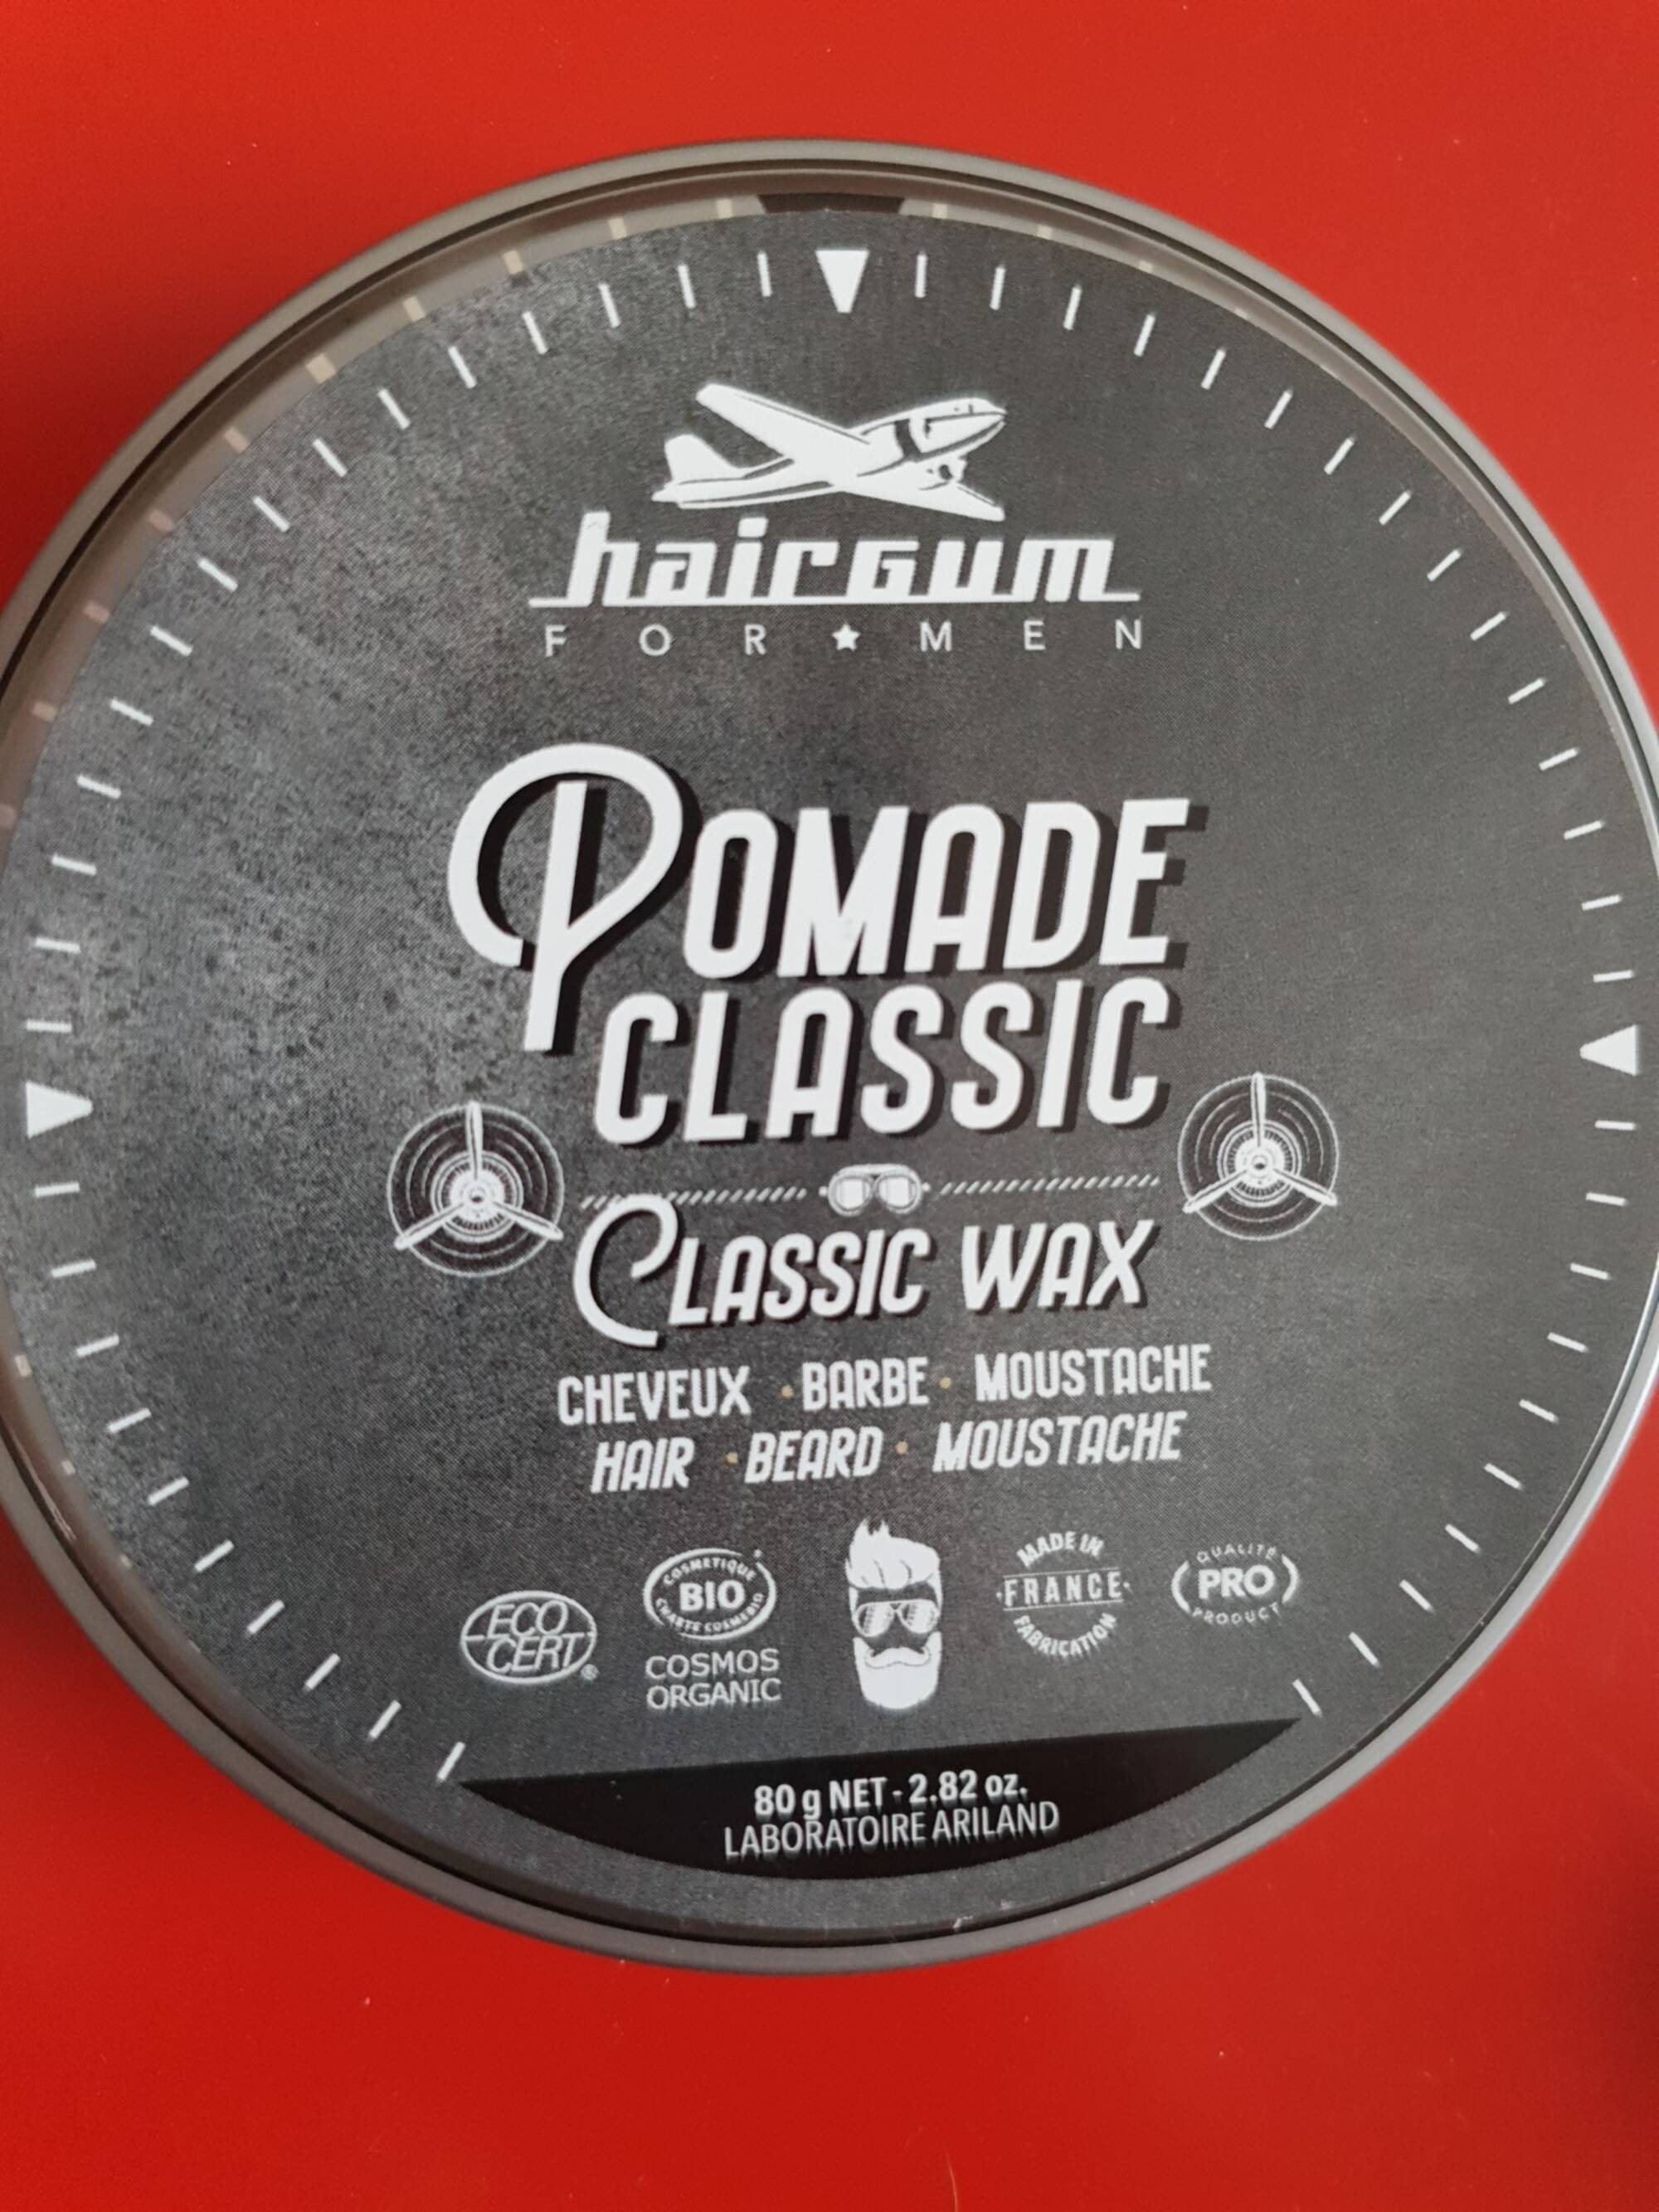 HAIRGUM - For men - Pommade classic